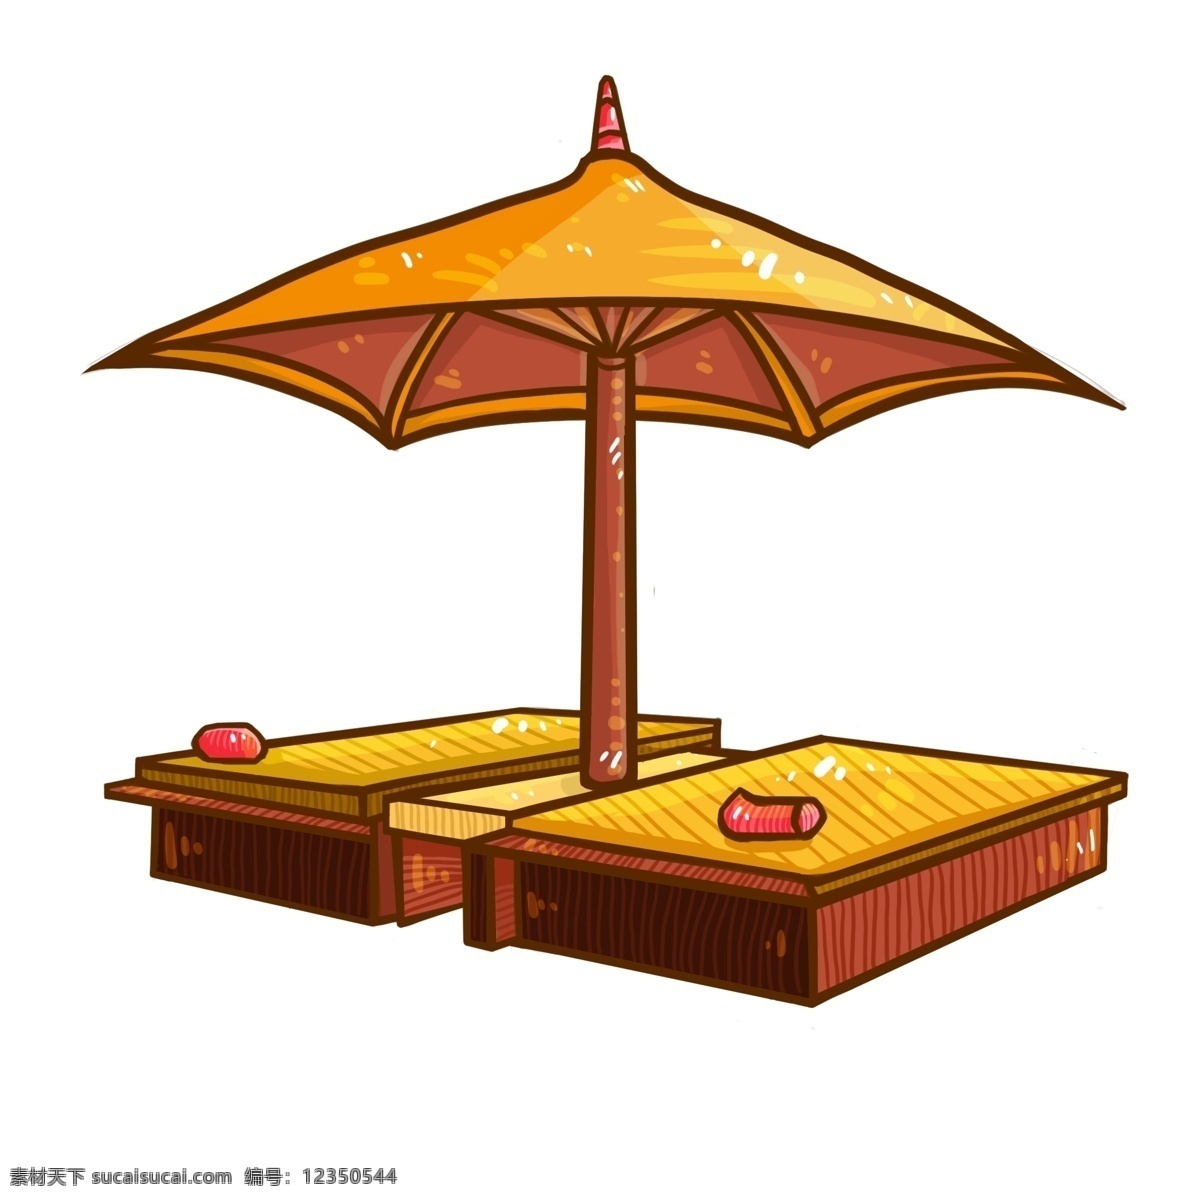 矢量 手绘 卡通 海边 雨伞 太阳伞 遮阳伞 休息区 一把雨伞 黄色雨伞 撑开的伞 保护伞 折叠伞 沙滩伞 花伞 沙滩休息区